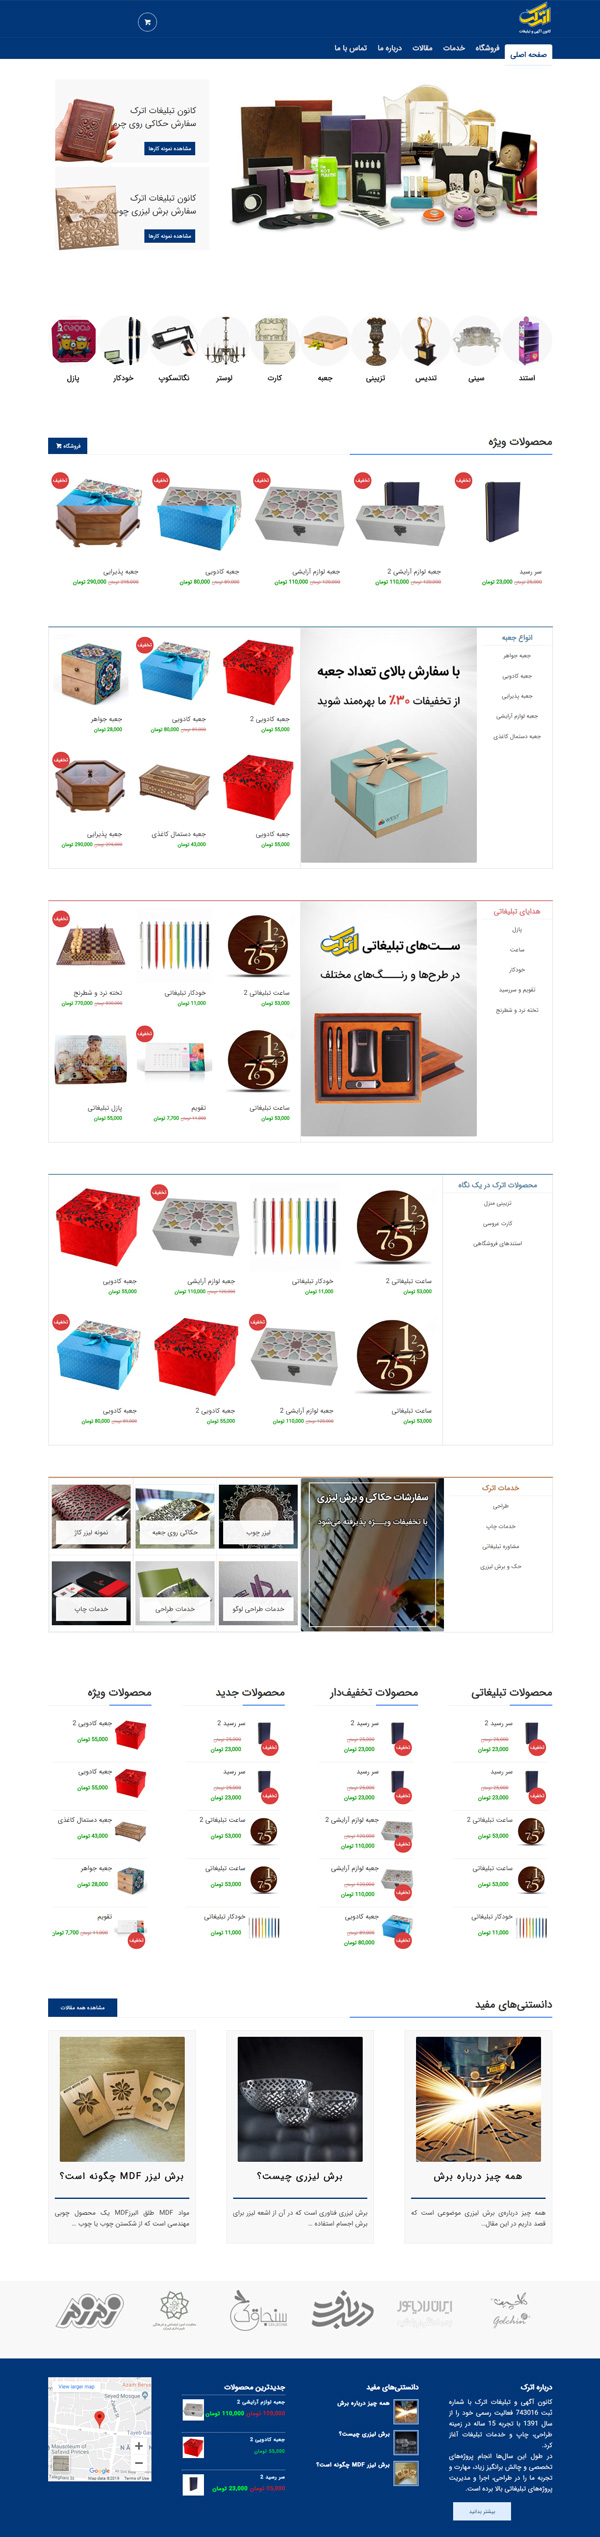 طراحی سایت اترک |تولید کننده و فروشگاه هدایای تبلیغاتی